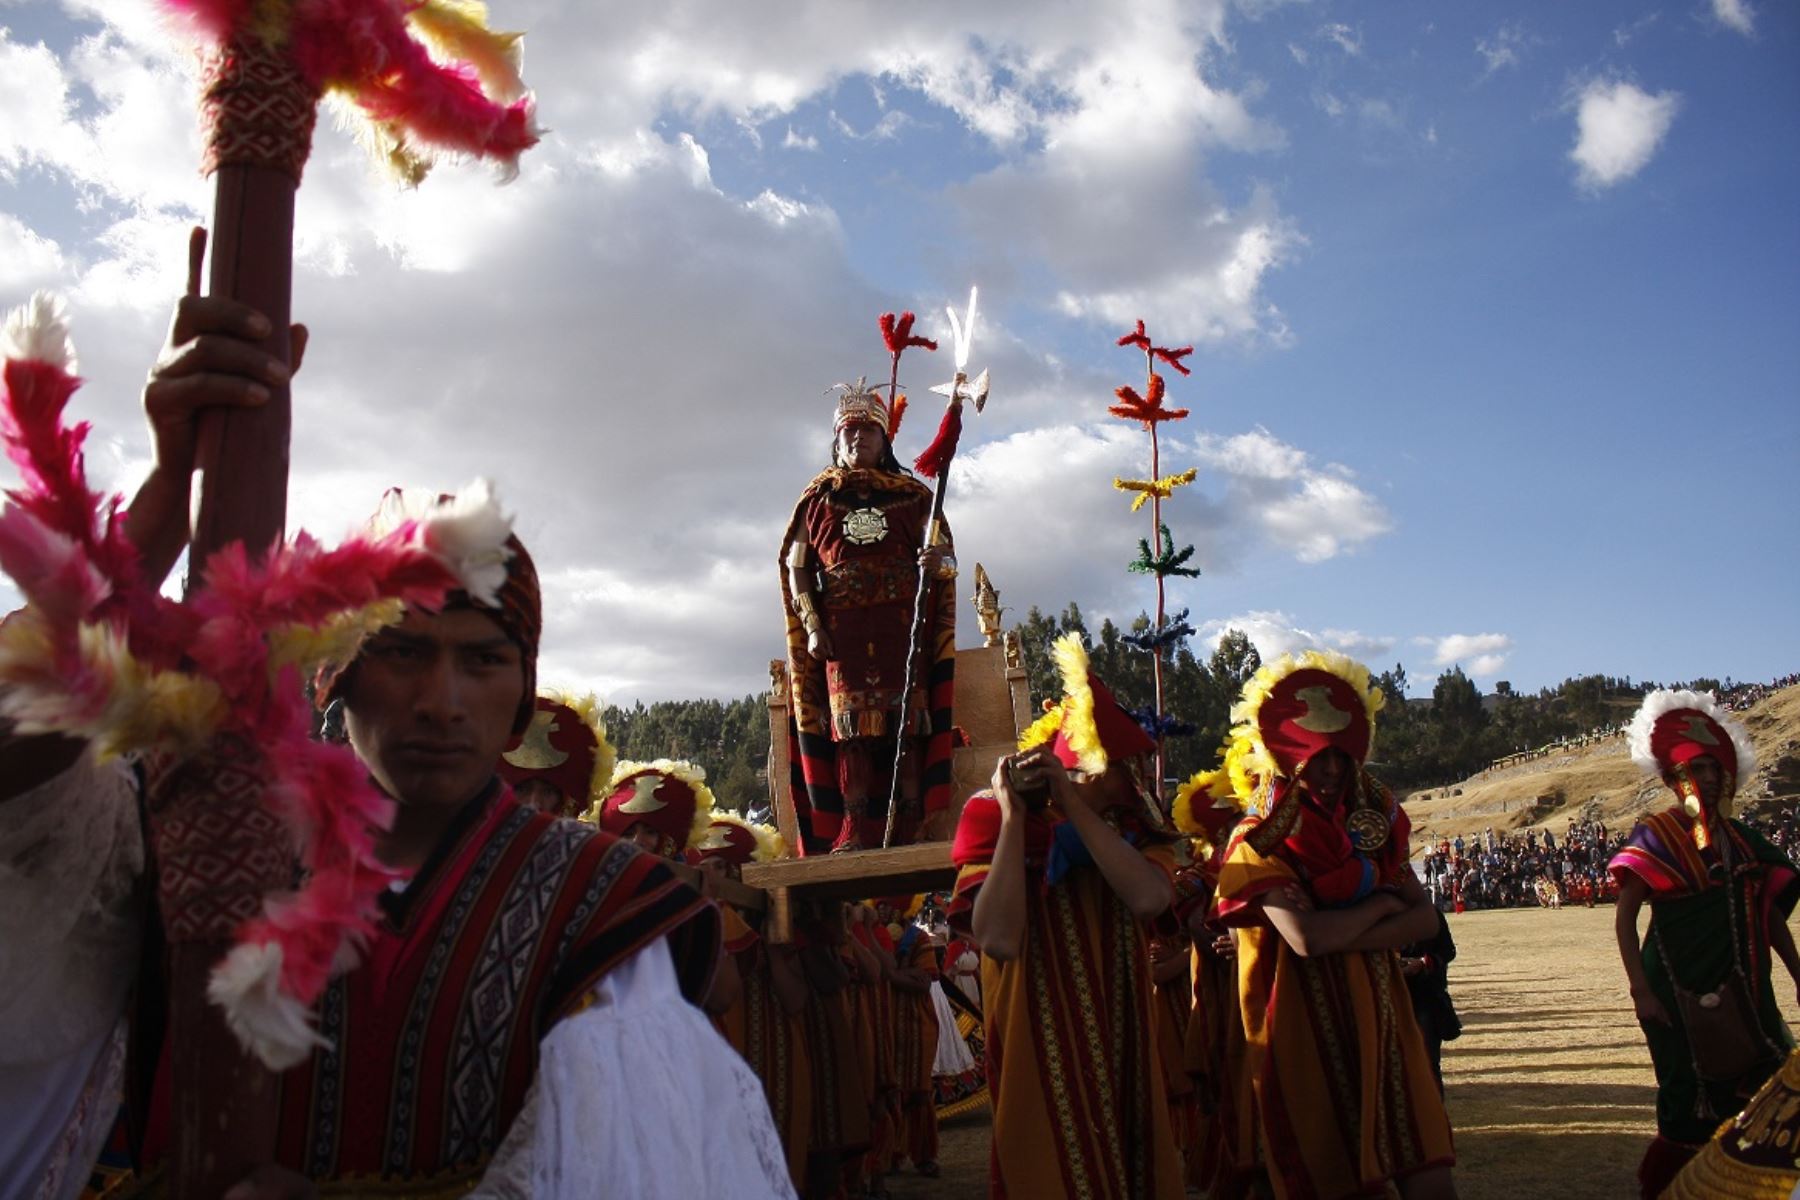 El Inti Raymi o Fiesta del Sol volvió e hizo vibrar a cusqueños y turistas que apreciaron escenificación. Foto: ANDINA/Percy Hurtado Santillán